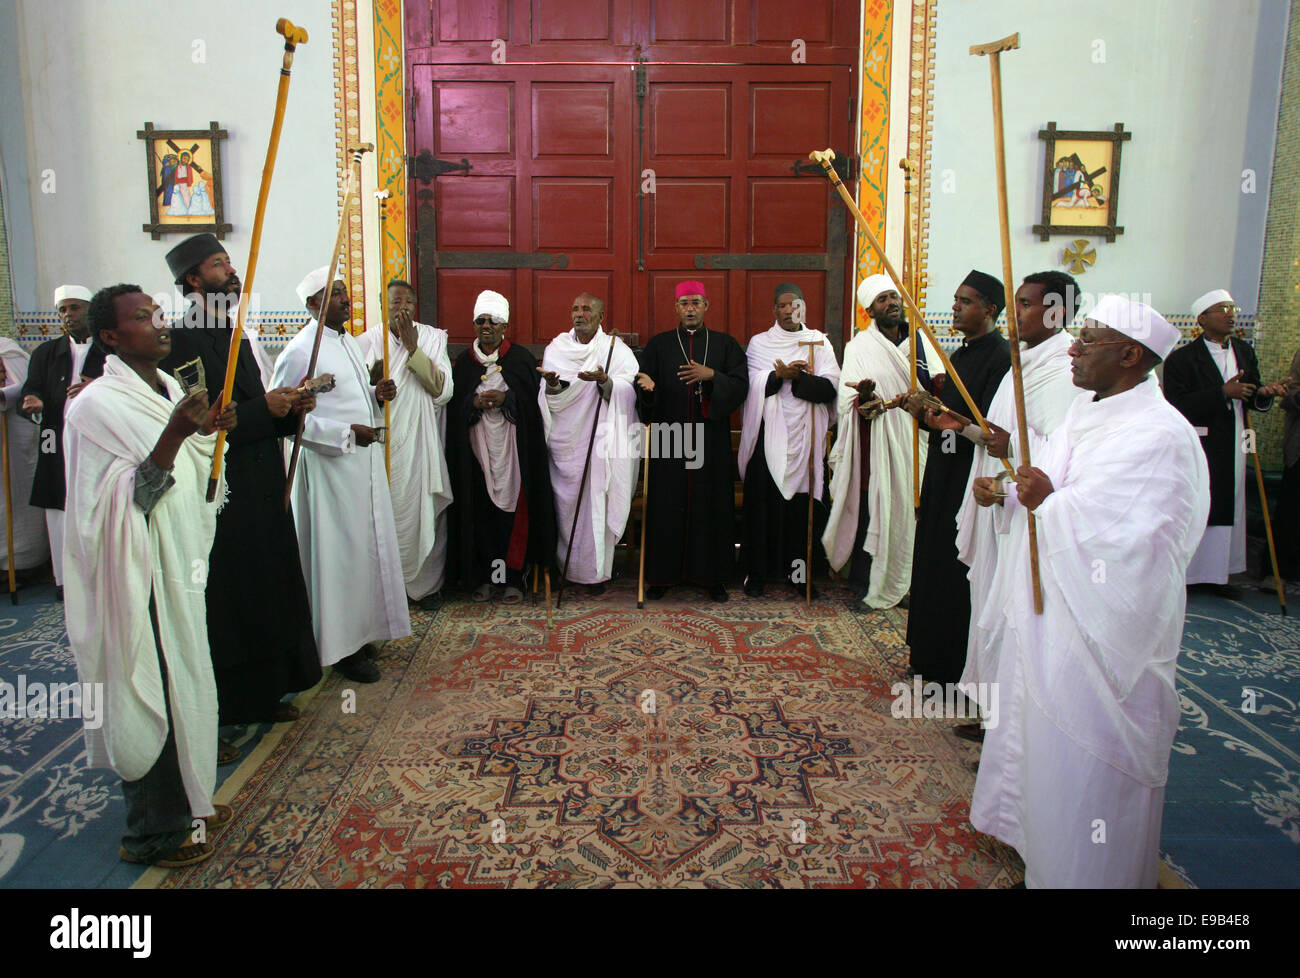 Les prêtres avec des bâtons chanter au cours d'une veillée dans le rite orthodoxe dans la Cathédrale du Saint Sauveur, Adigrat, Ethiopie Banque D'Images